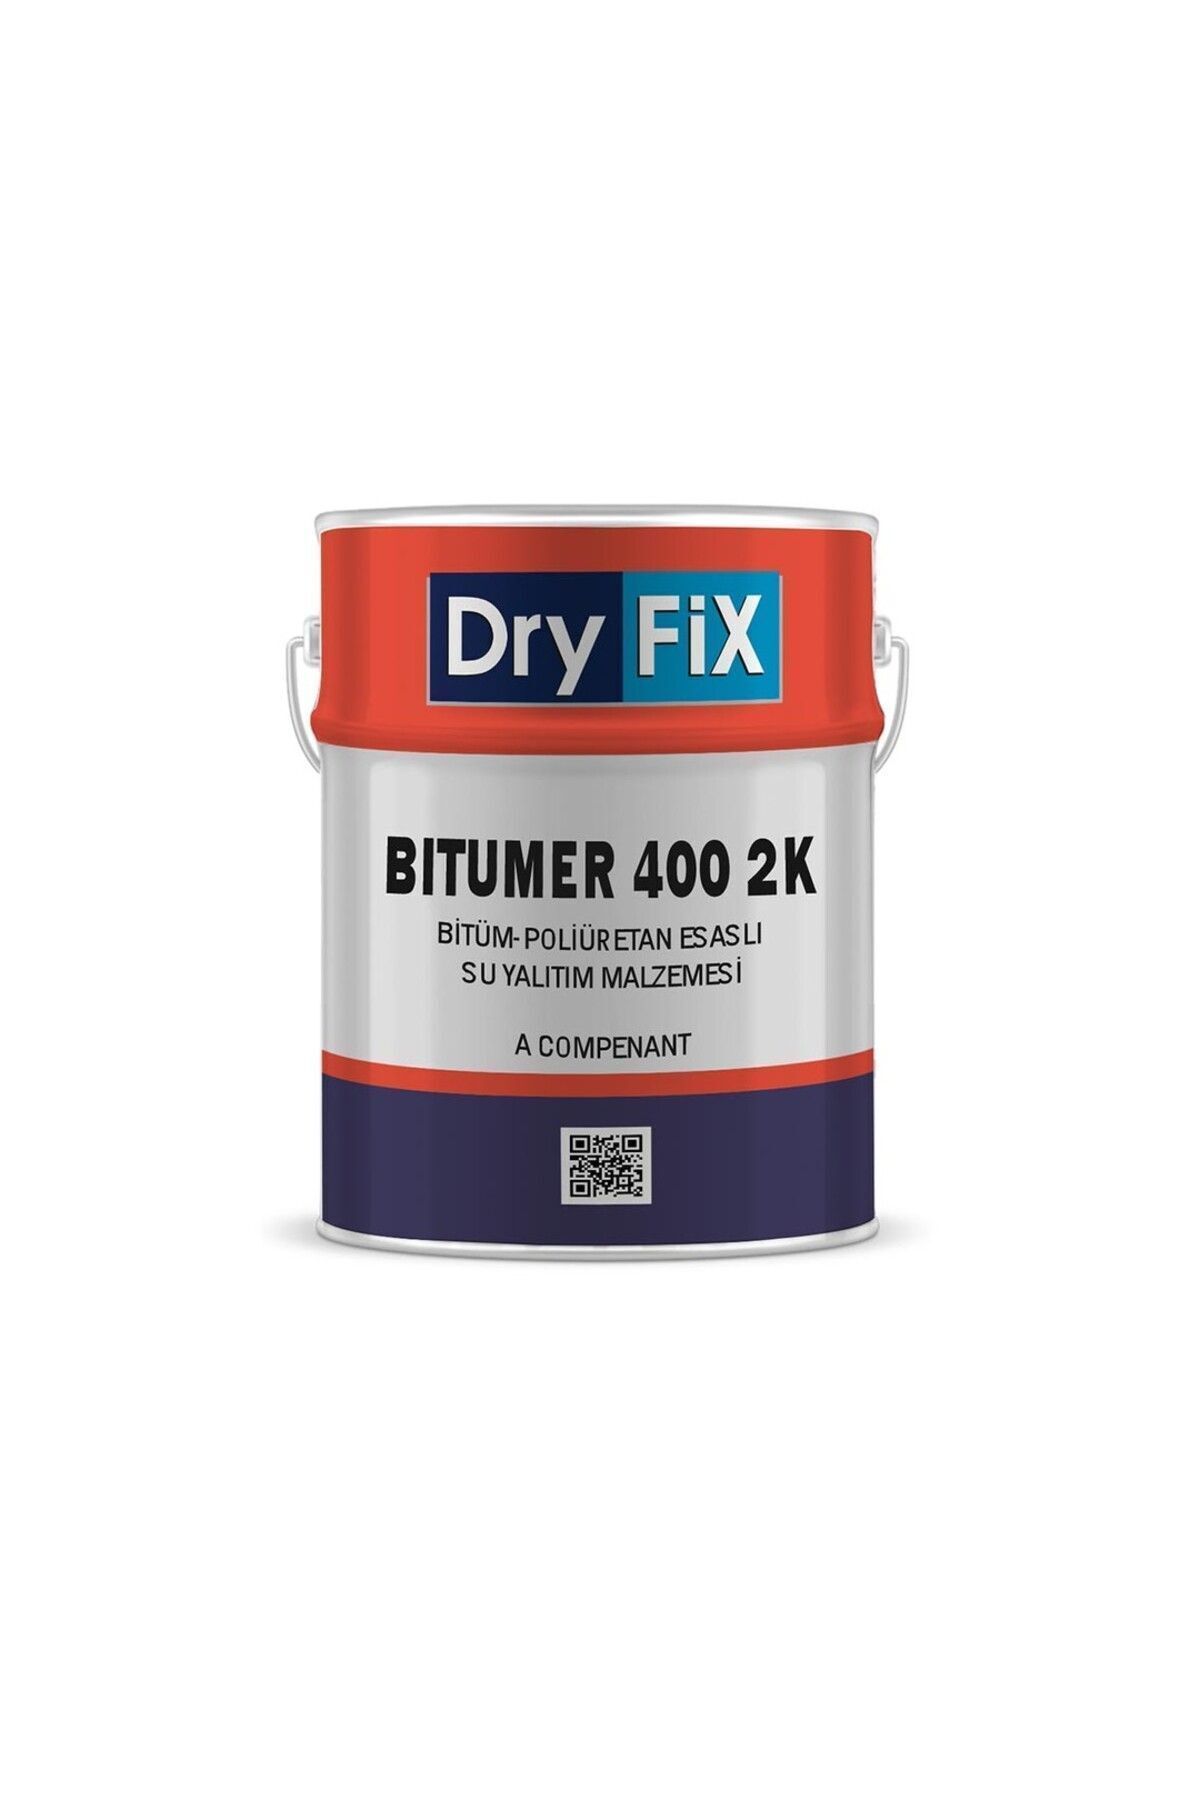 Dryfix Bitüm-poliüretan Esaslı Su Yalıtım Malzemesi 40kg | Bitumer 400 2k